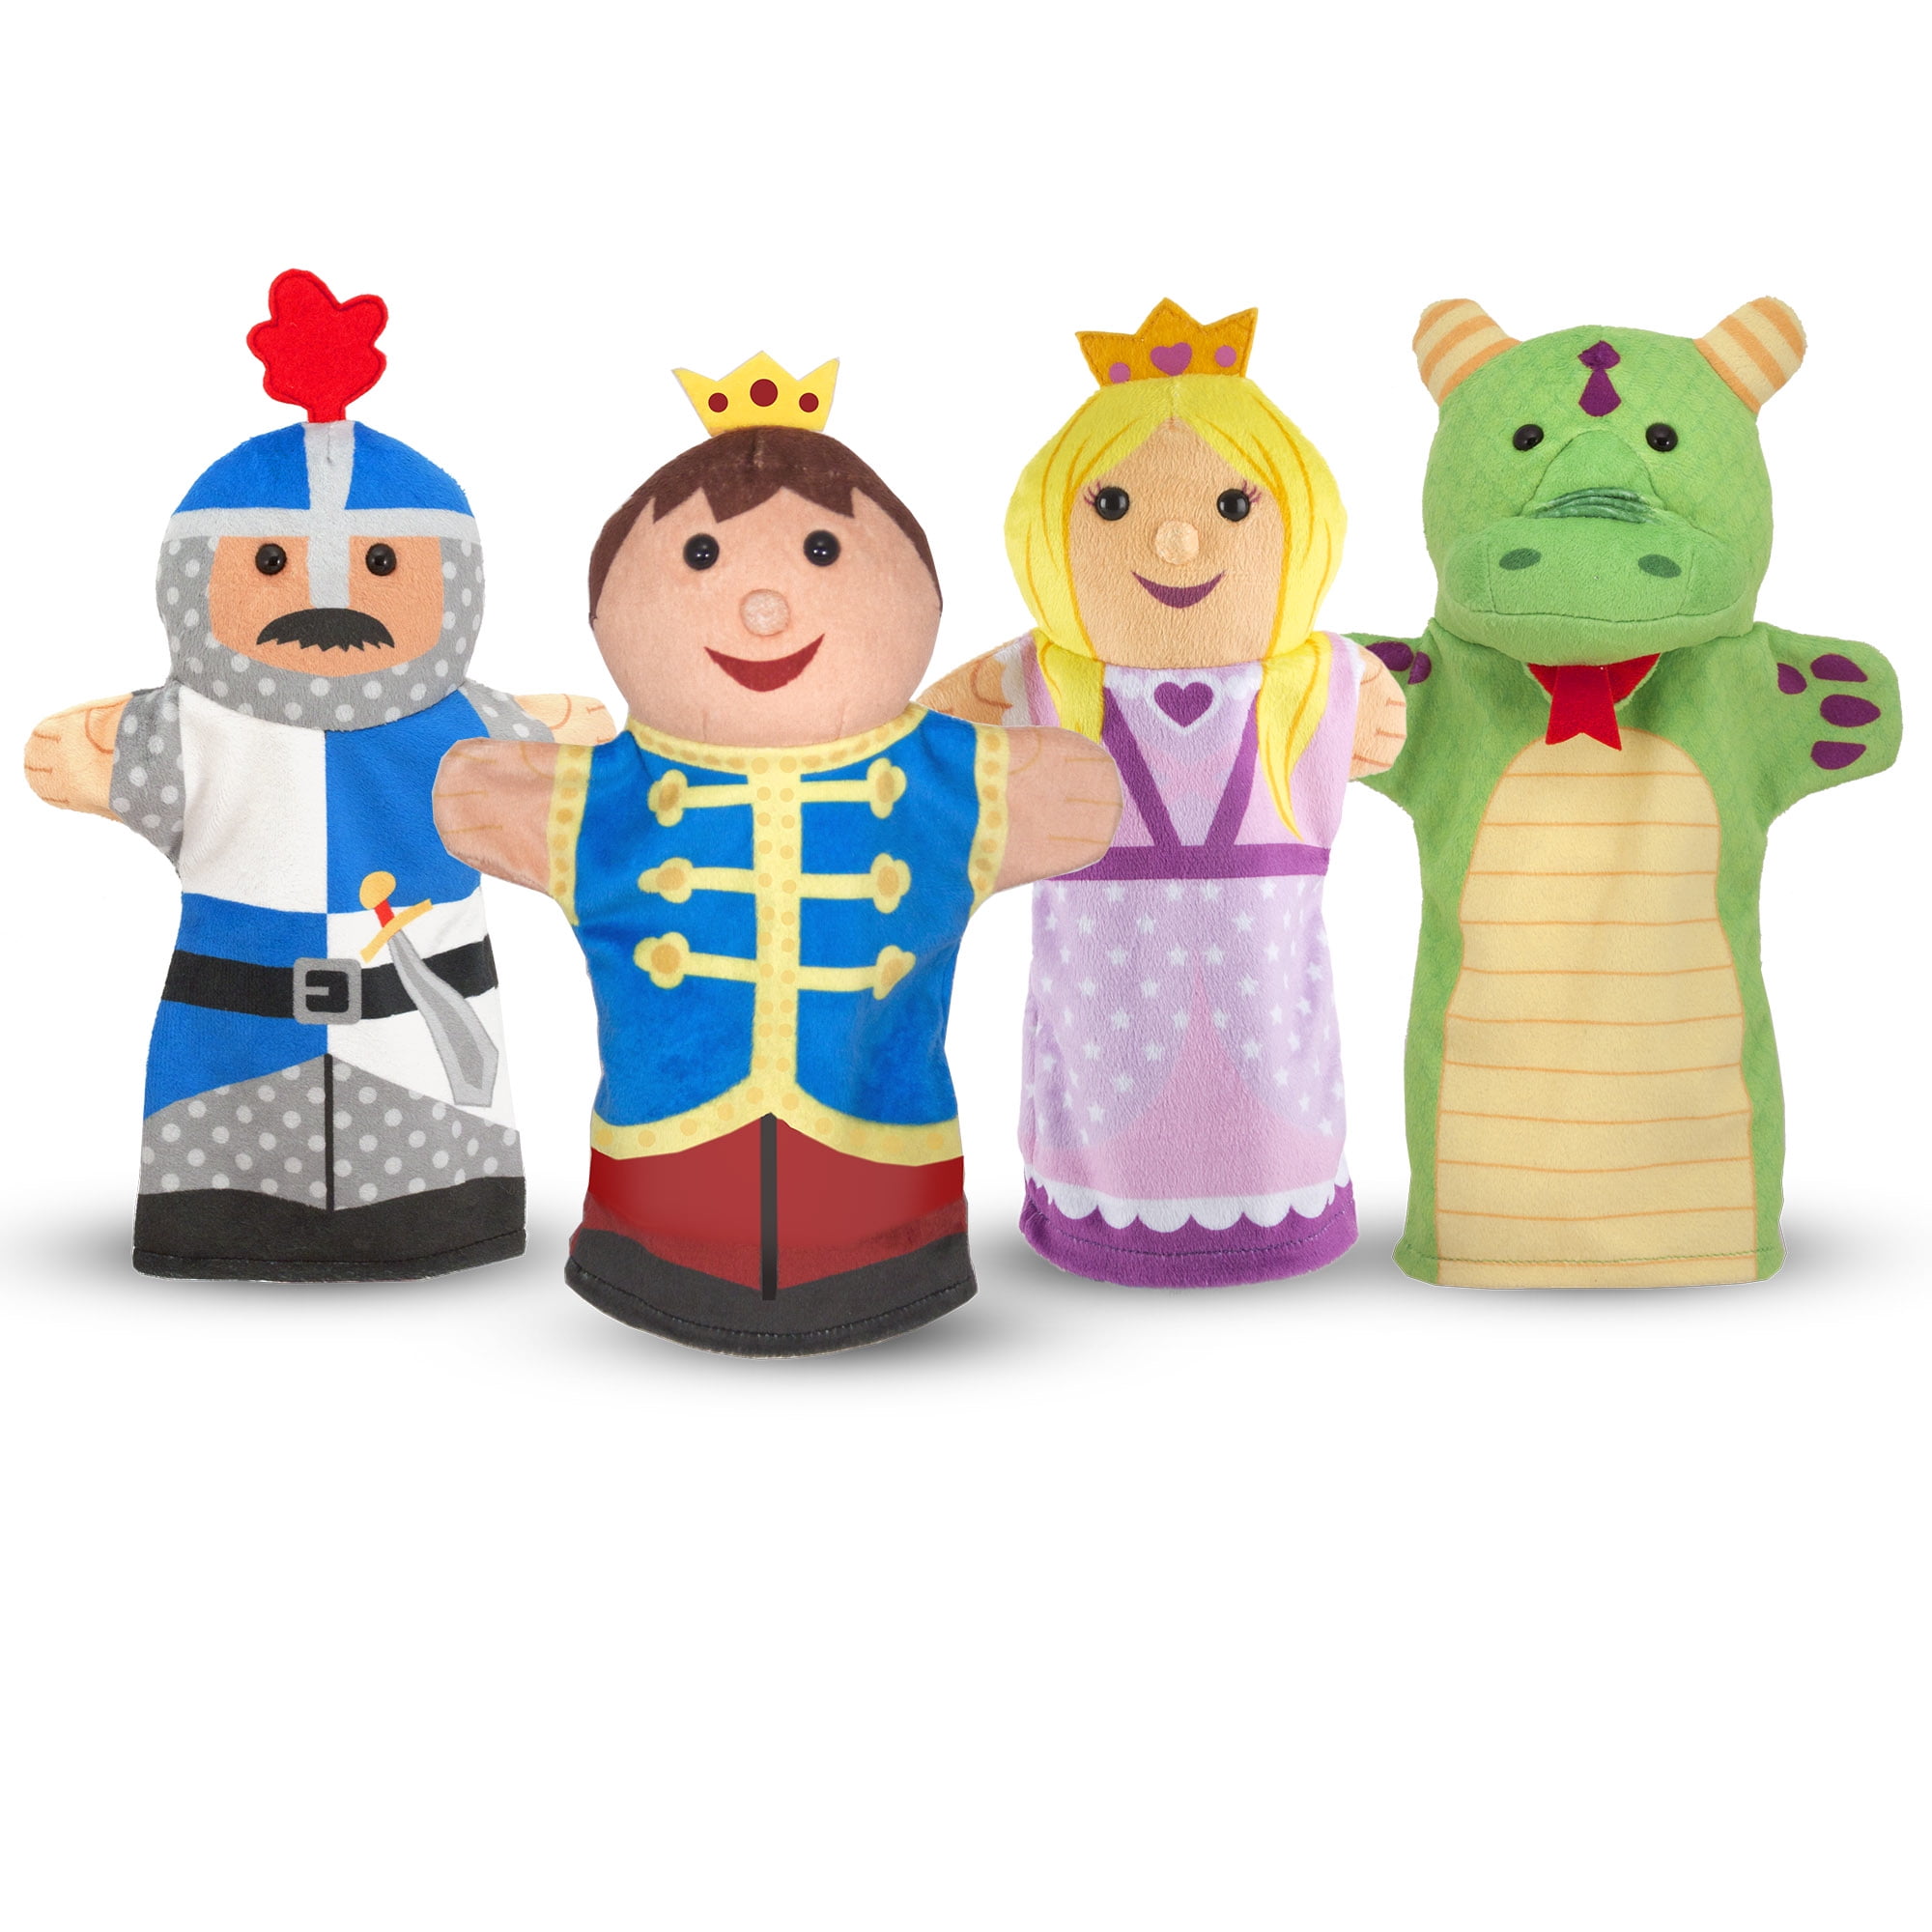 Animal Wildlife Hand Glove Puppet Soft Plush Puppets Kid Children Toy Gift UK 